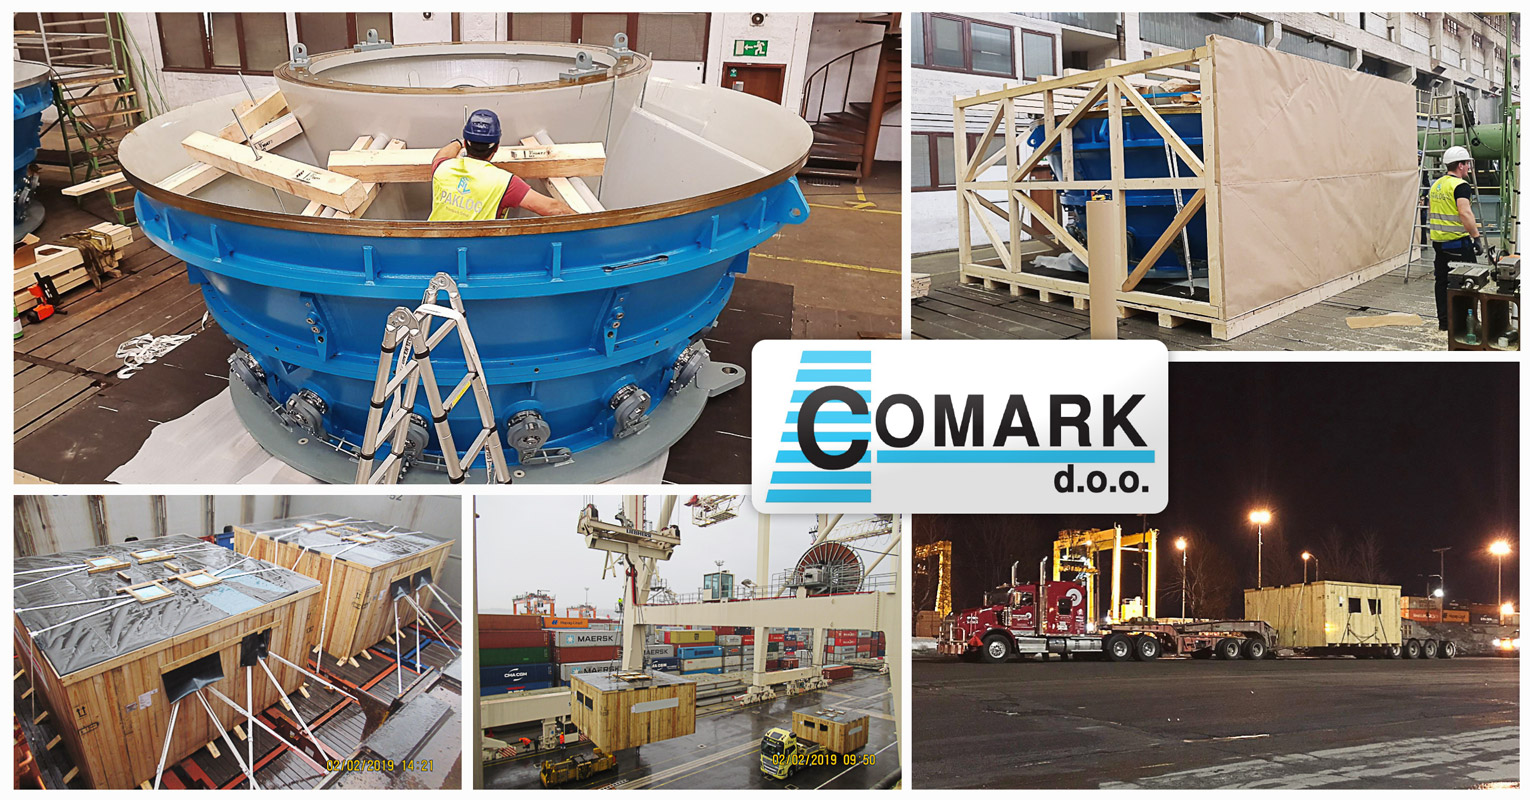 Comark handled a door to door breakbulk project from Slovenia to Canada